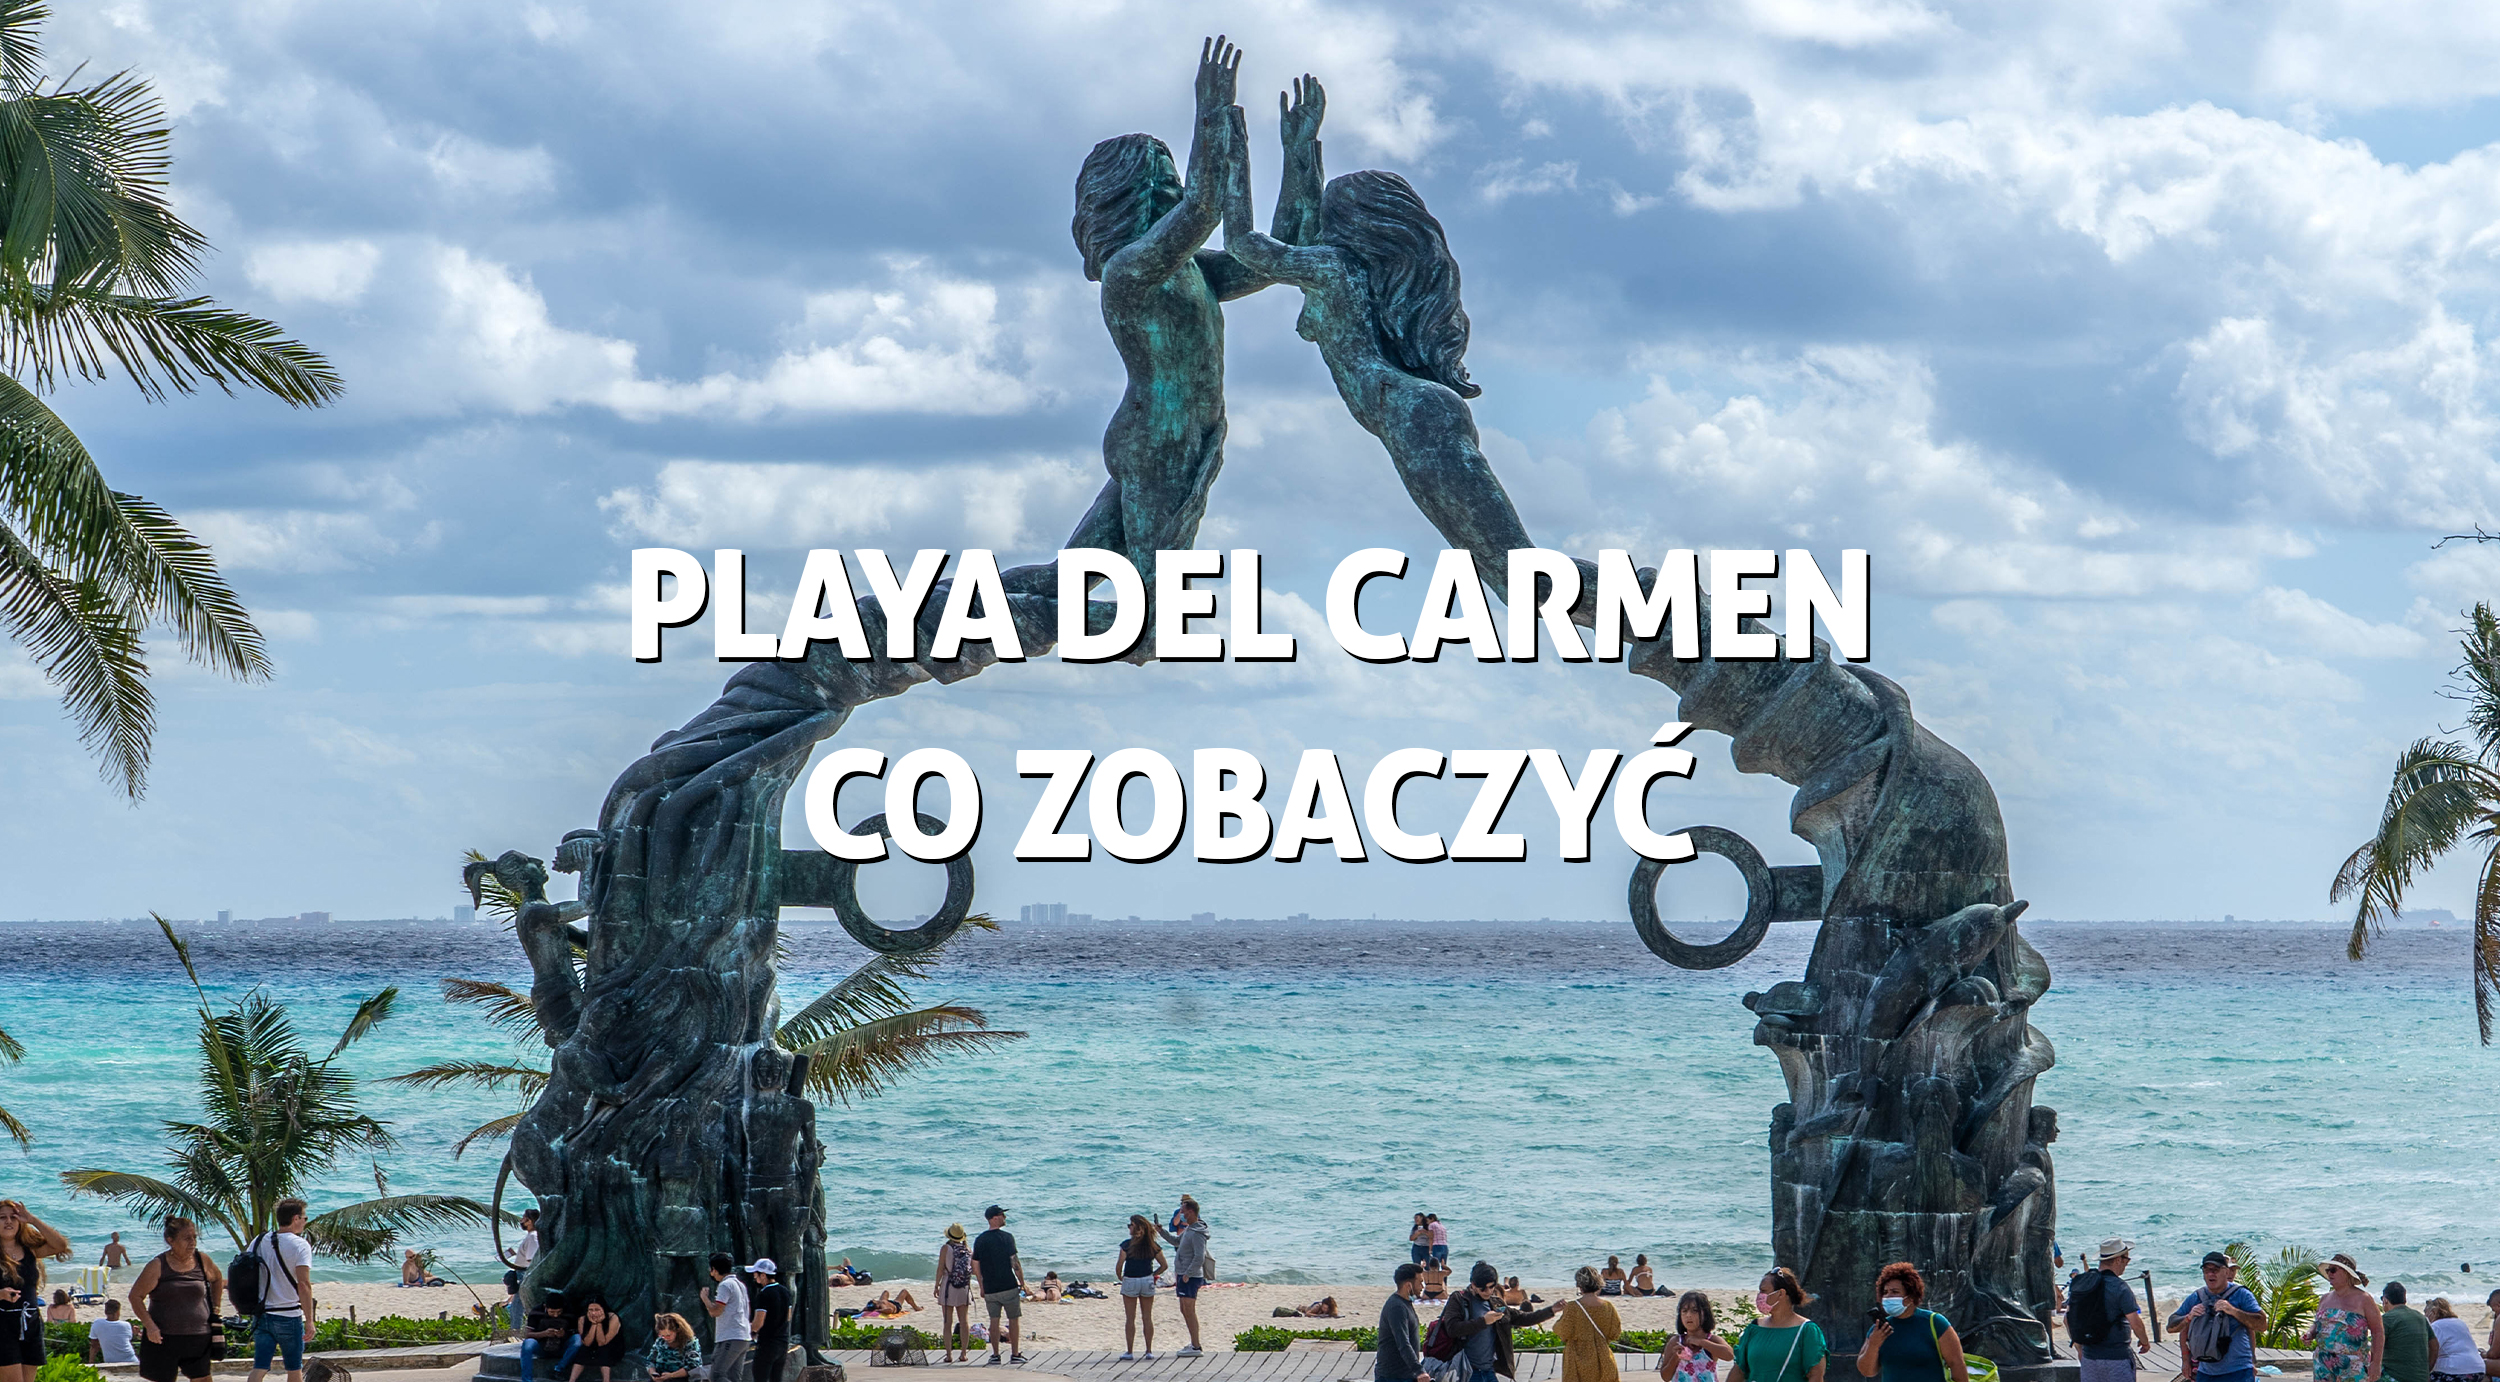 Co zobaczyć w Playa del Carmen, Meksyk – atrakcje i jaka jest pogoda